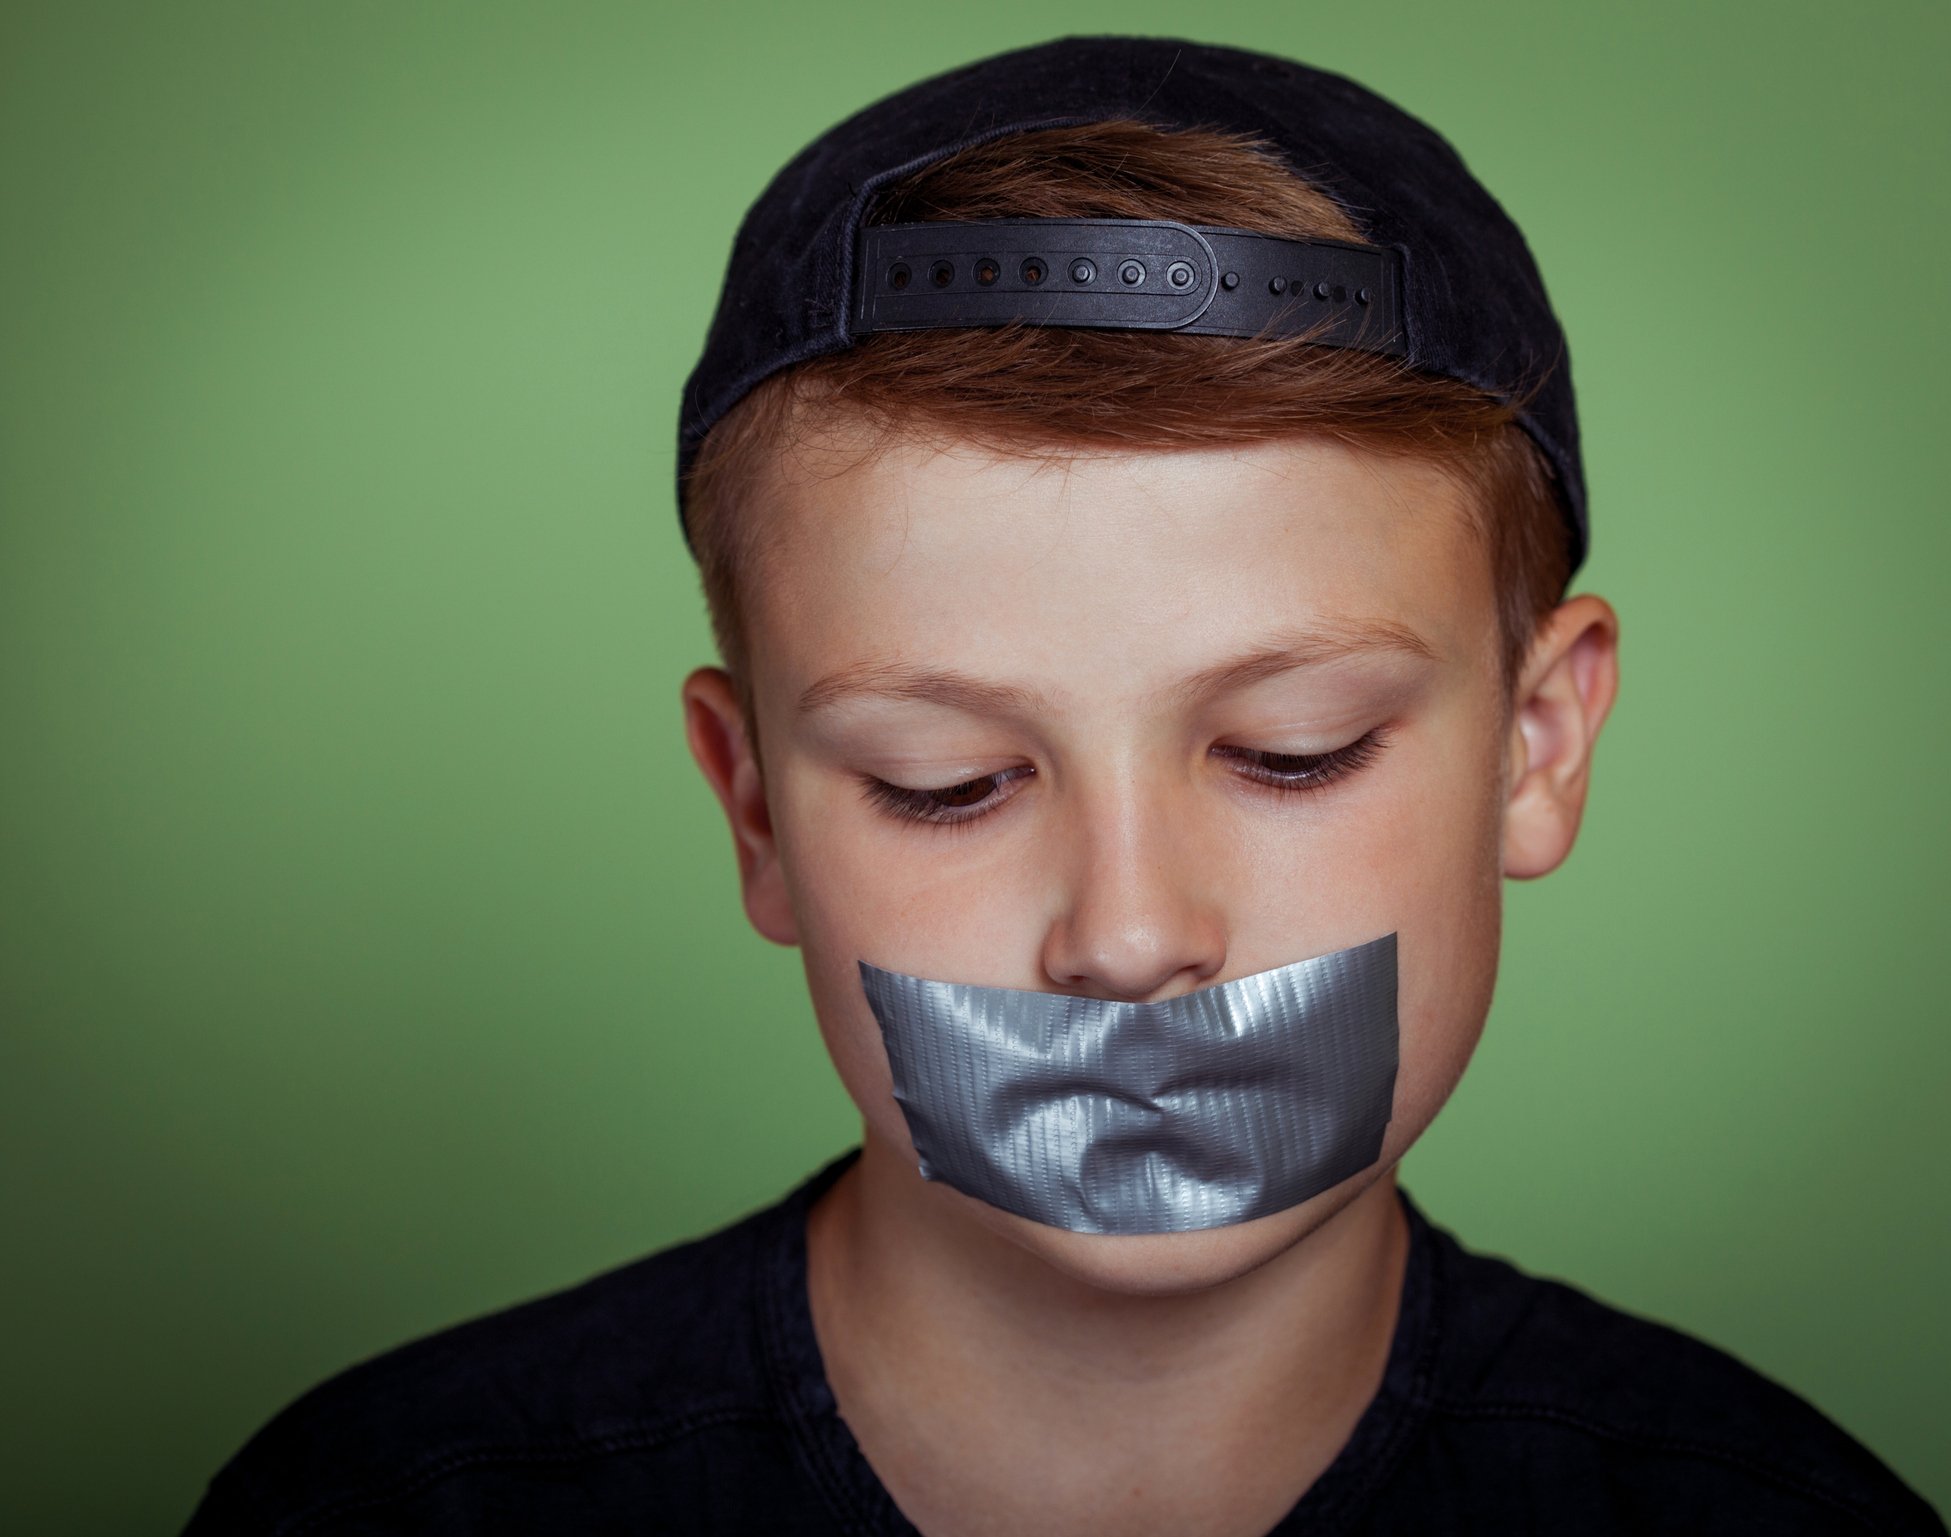 Sprachloser Junge mit Klebeband über Mund | Quelle: Getty Images